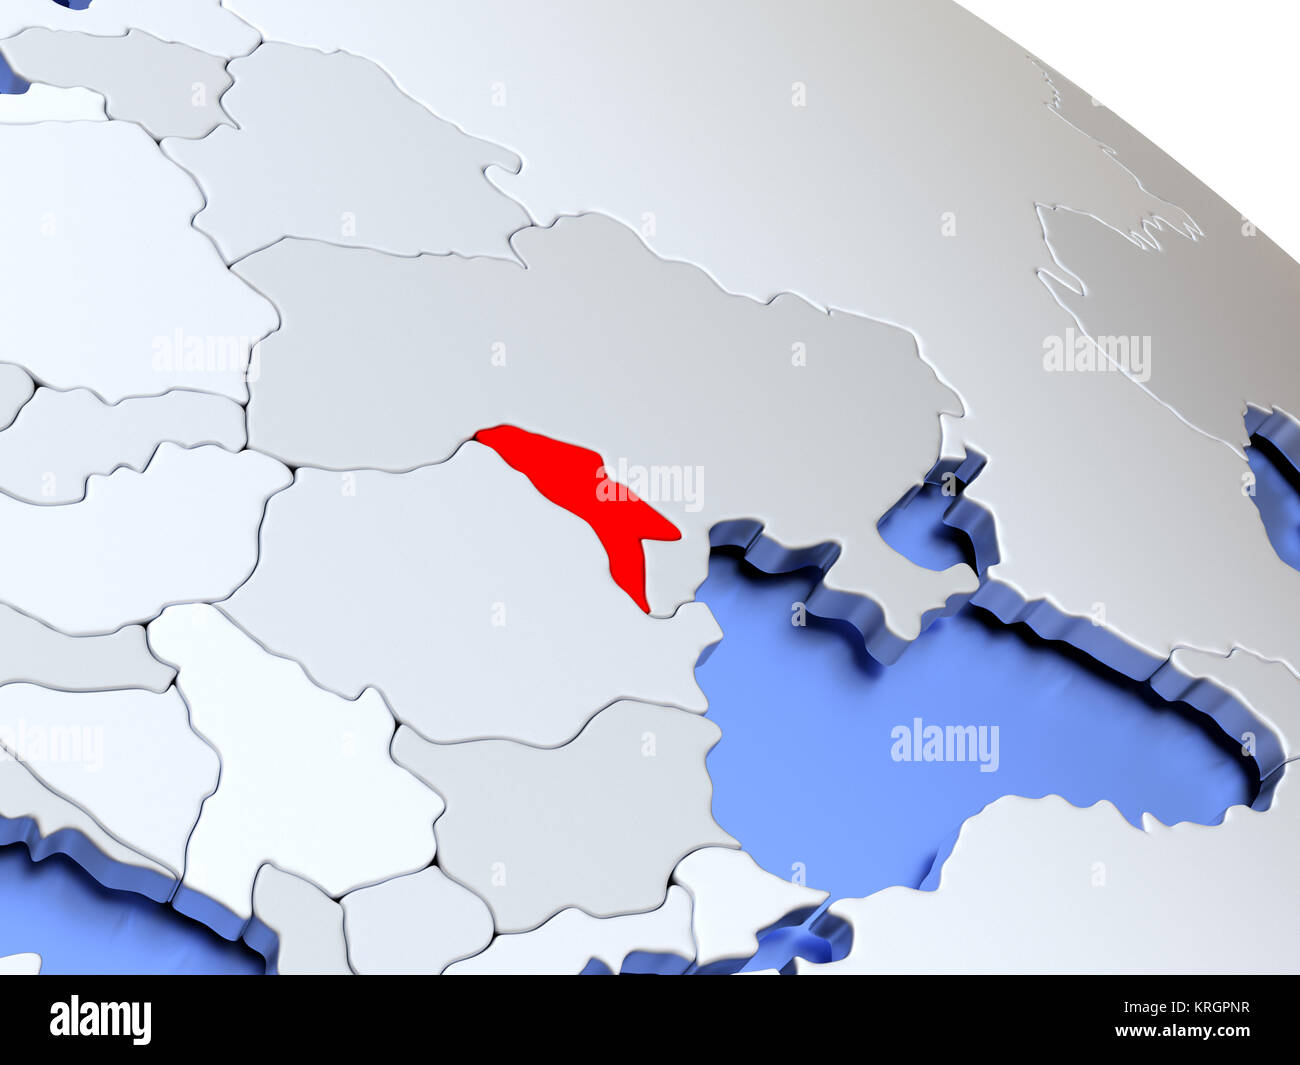 Moldova on world map Stock Photo